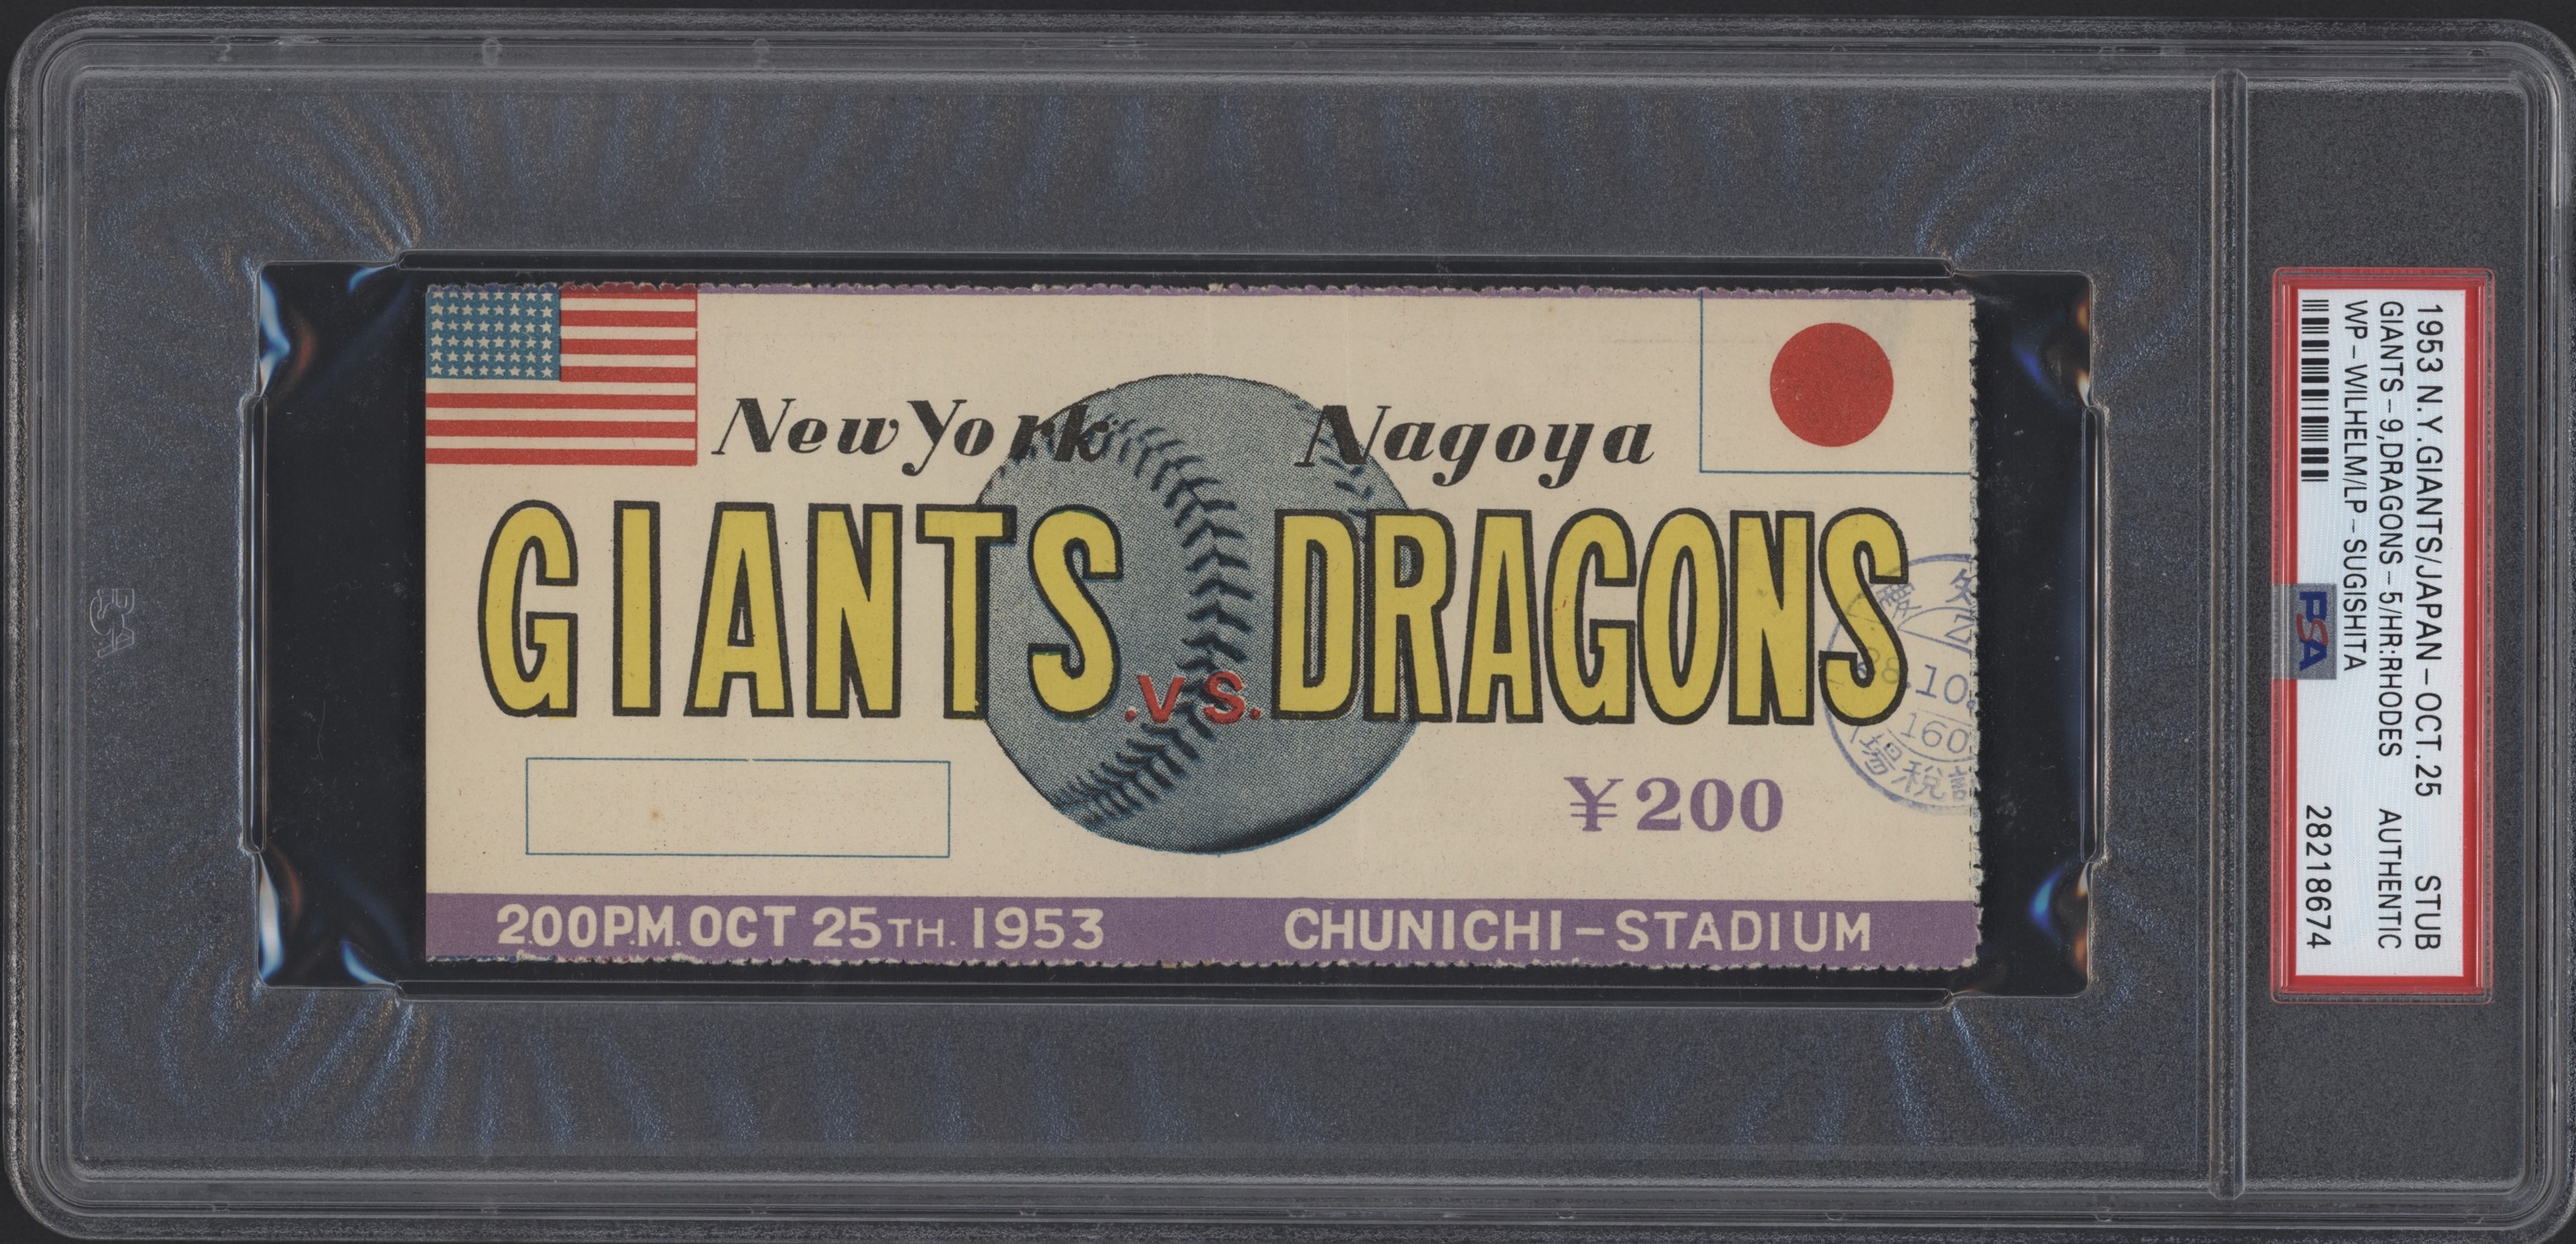 - 1953 New York Giants vs. Nagoya Dragons Ticket Stub